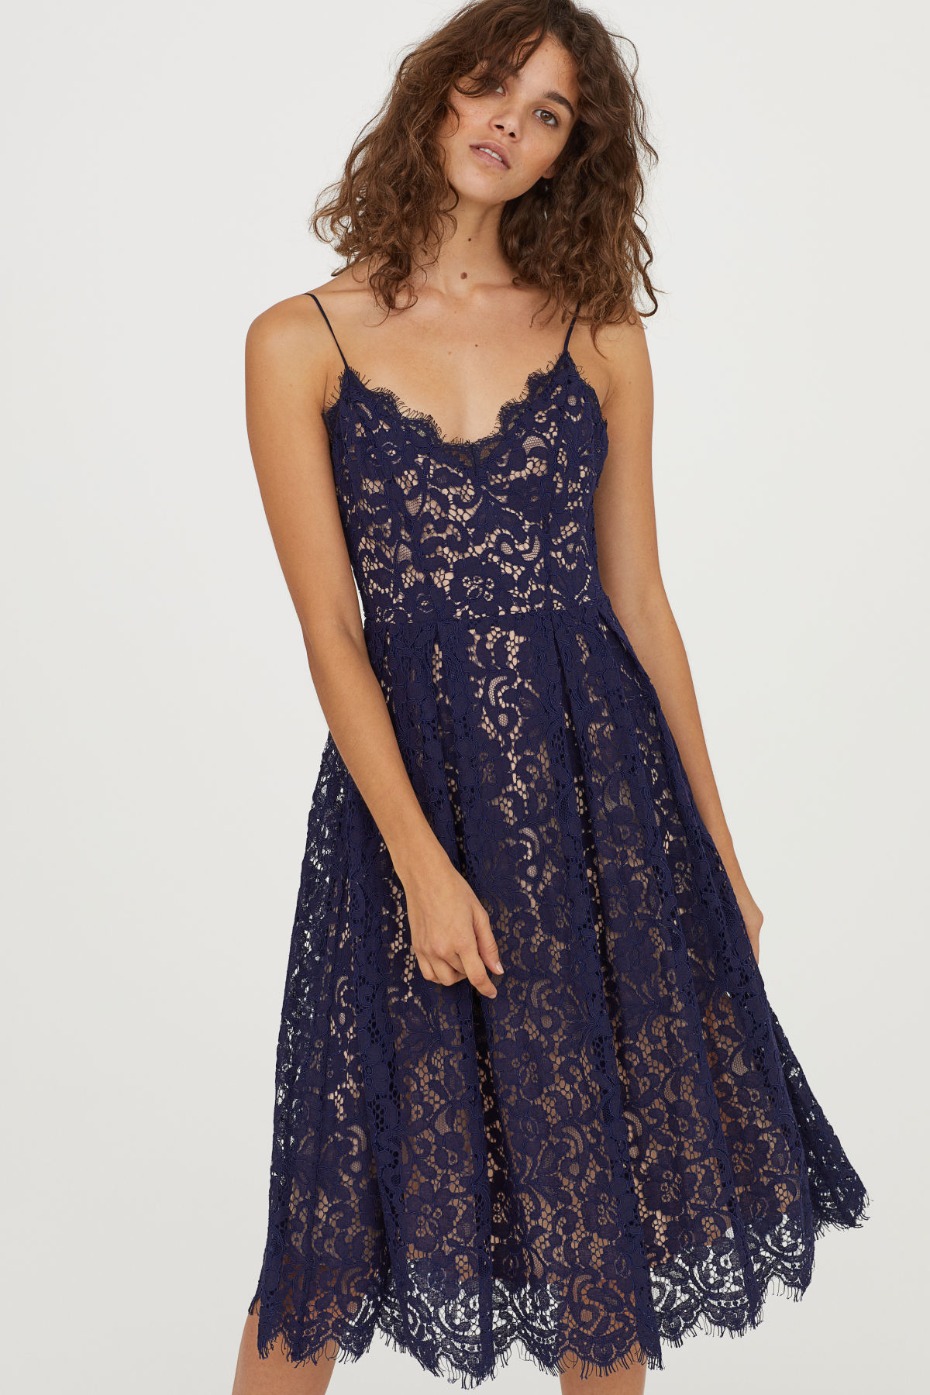 H&M Lace Blue Dress